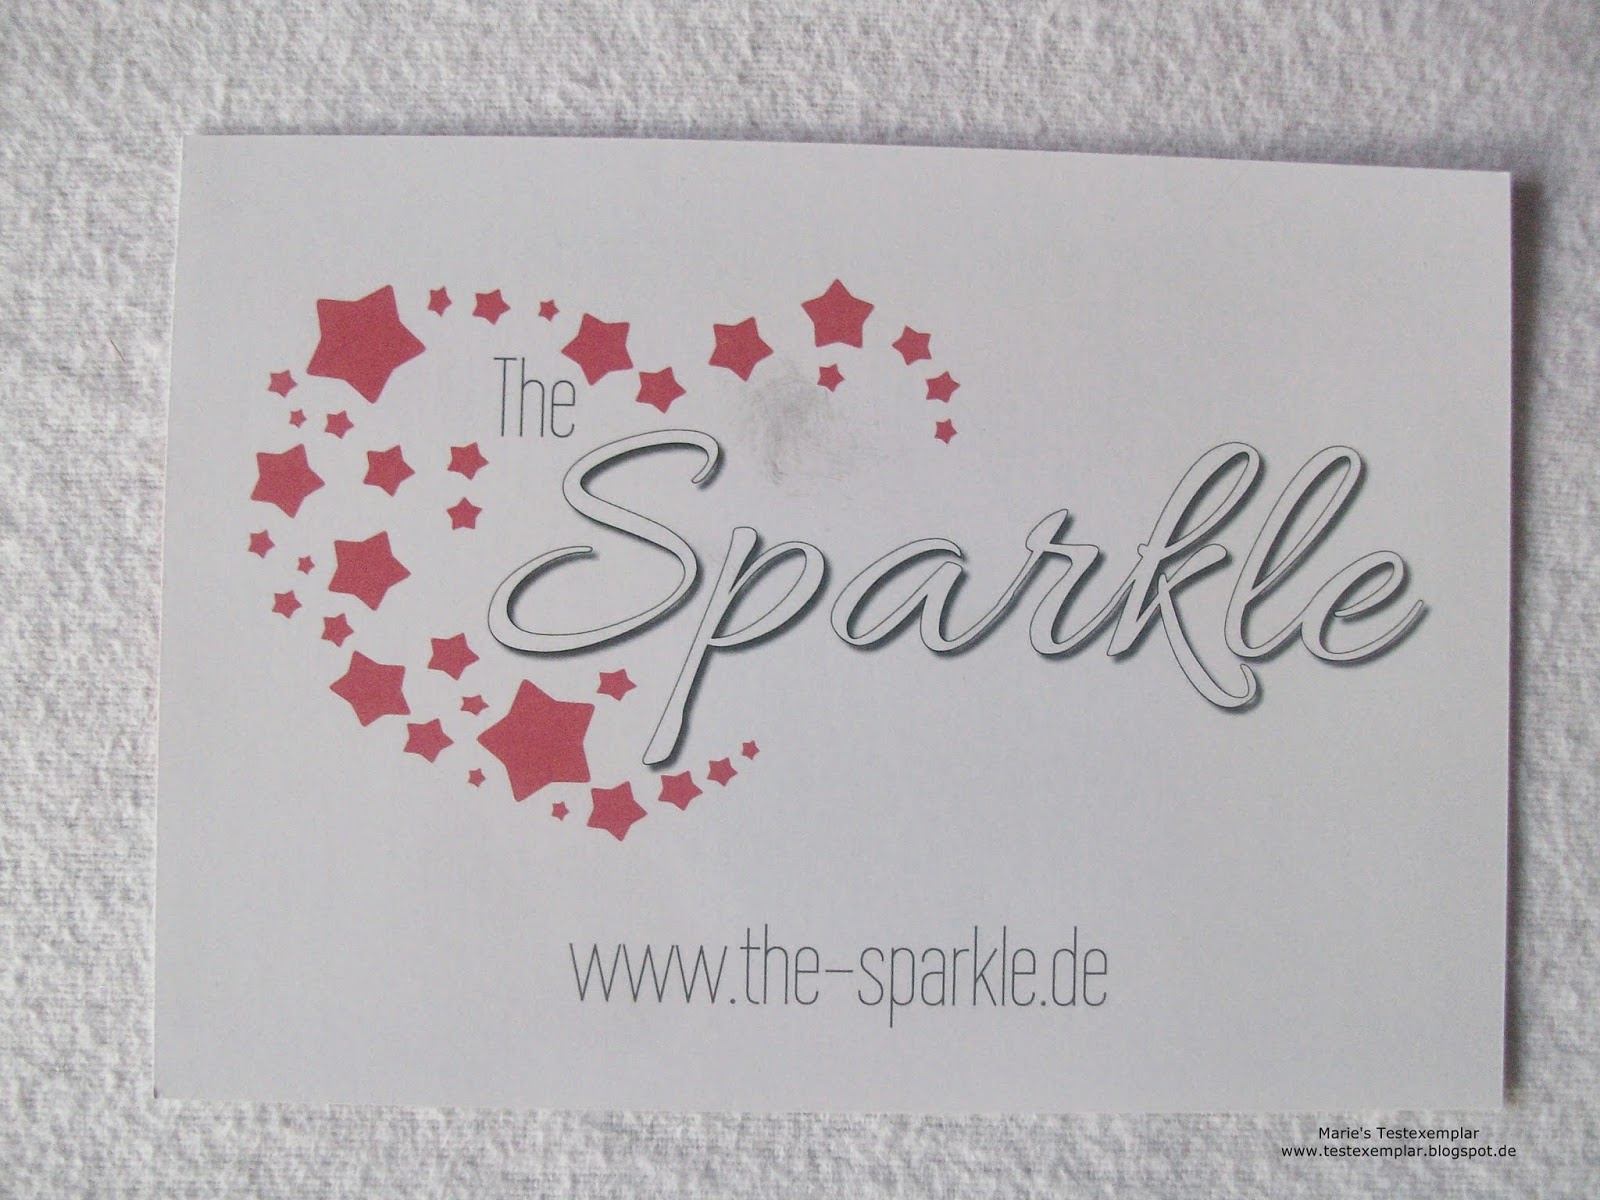 http://www.the-sparkle.de